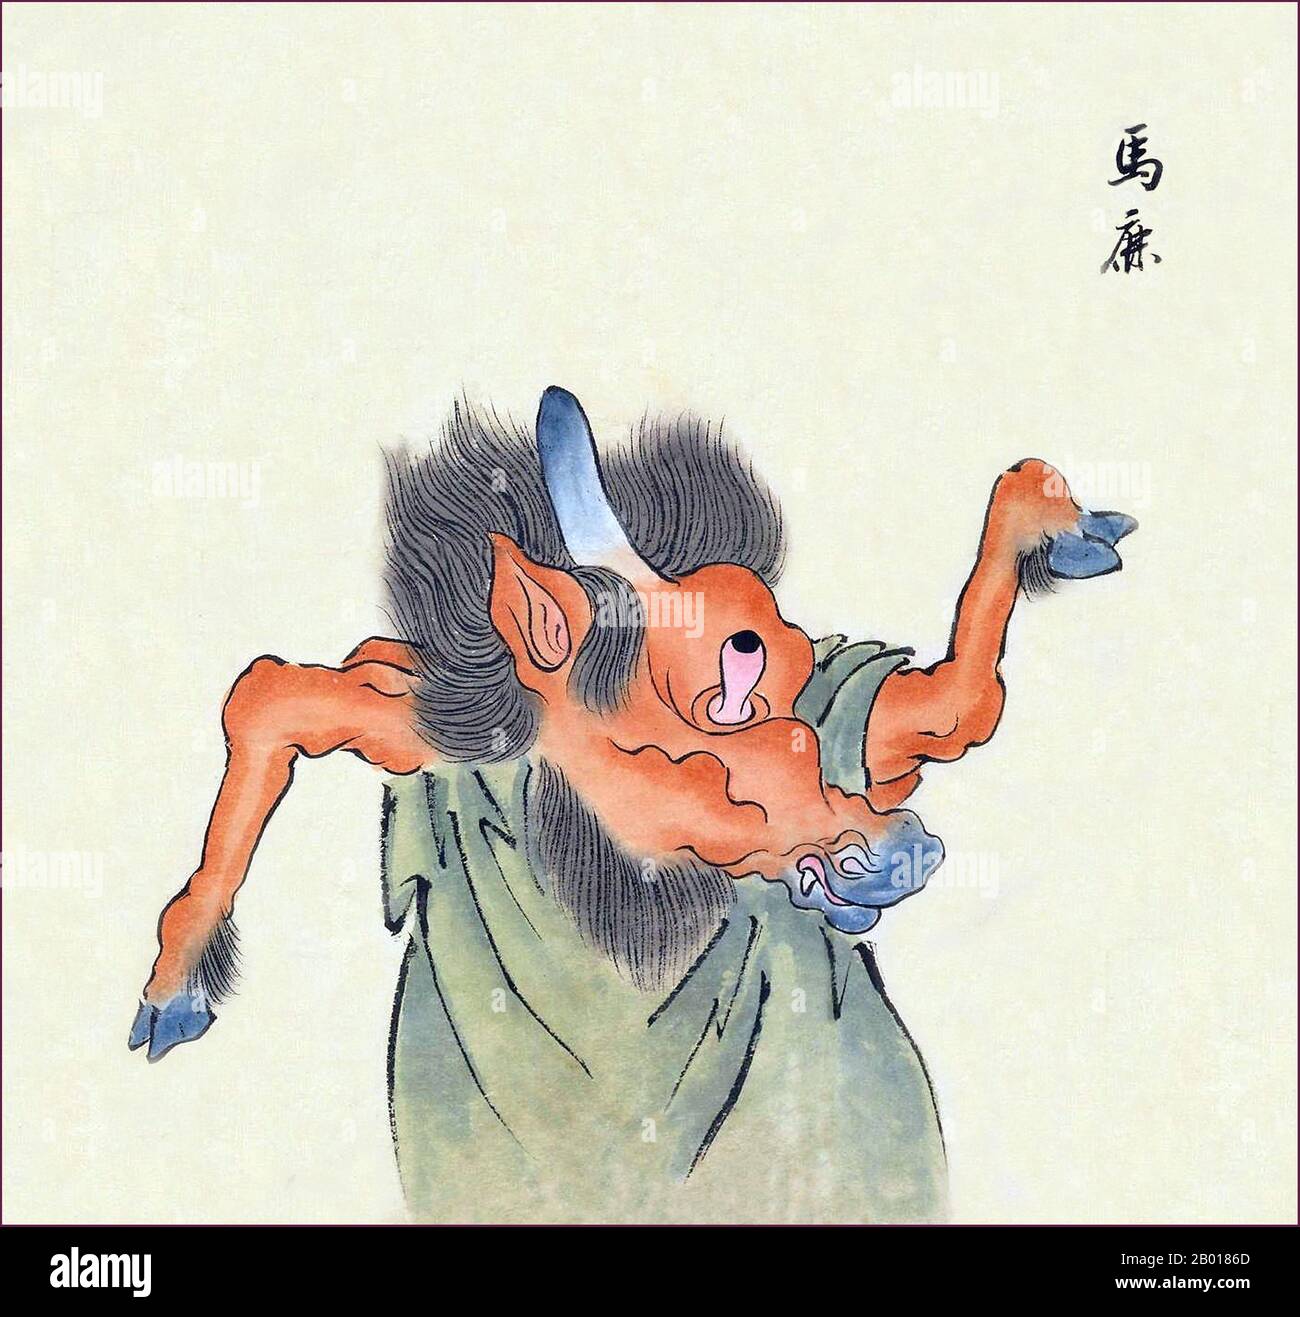 Japón: La Uma-shika es un monstruo parecido a un caballo con un cuerno en la cabeza y un único ojo abultado. Del bakemono Zukushi Monster Scroll, Edo período (1603-1868), 19th-18th siglo. Foto de stock